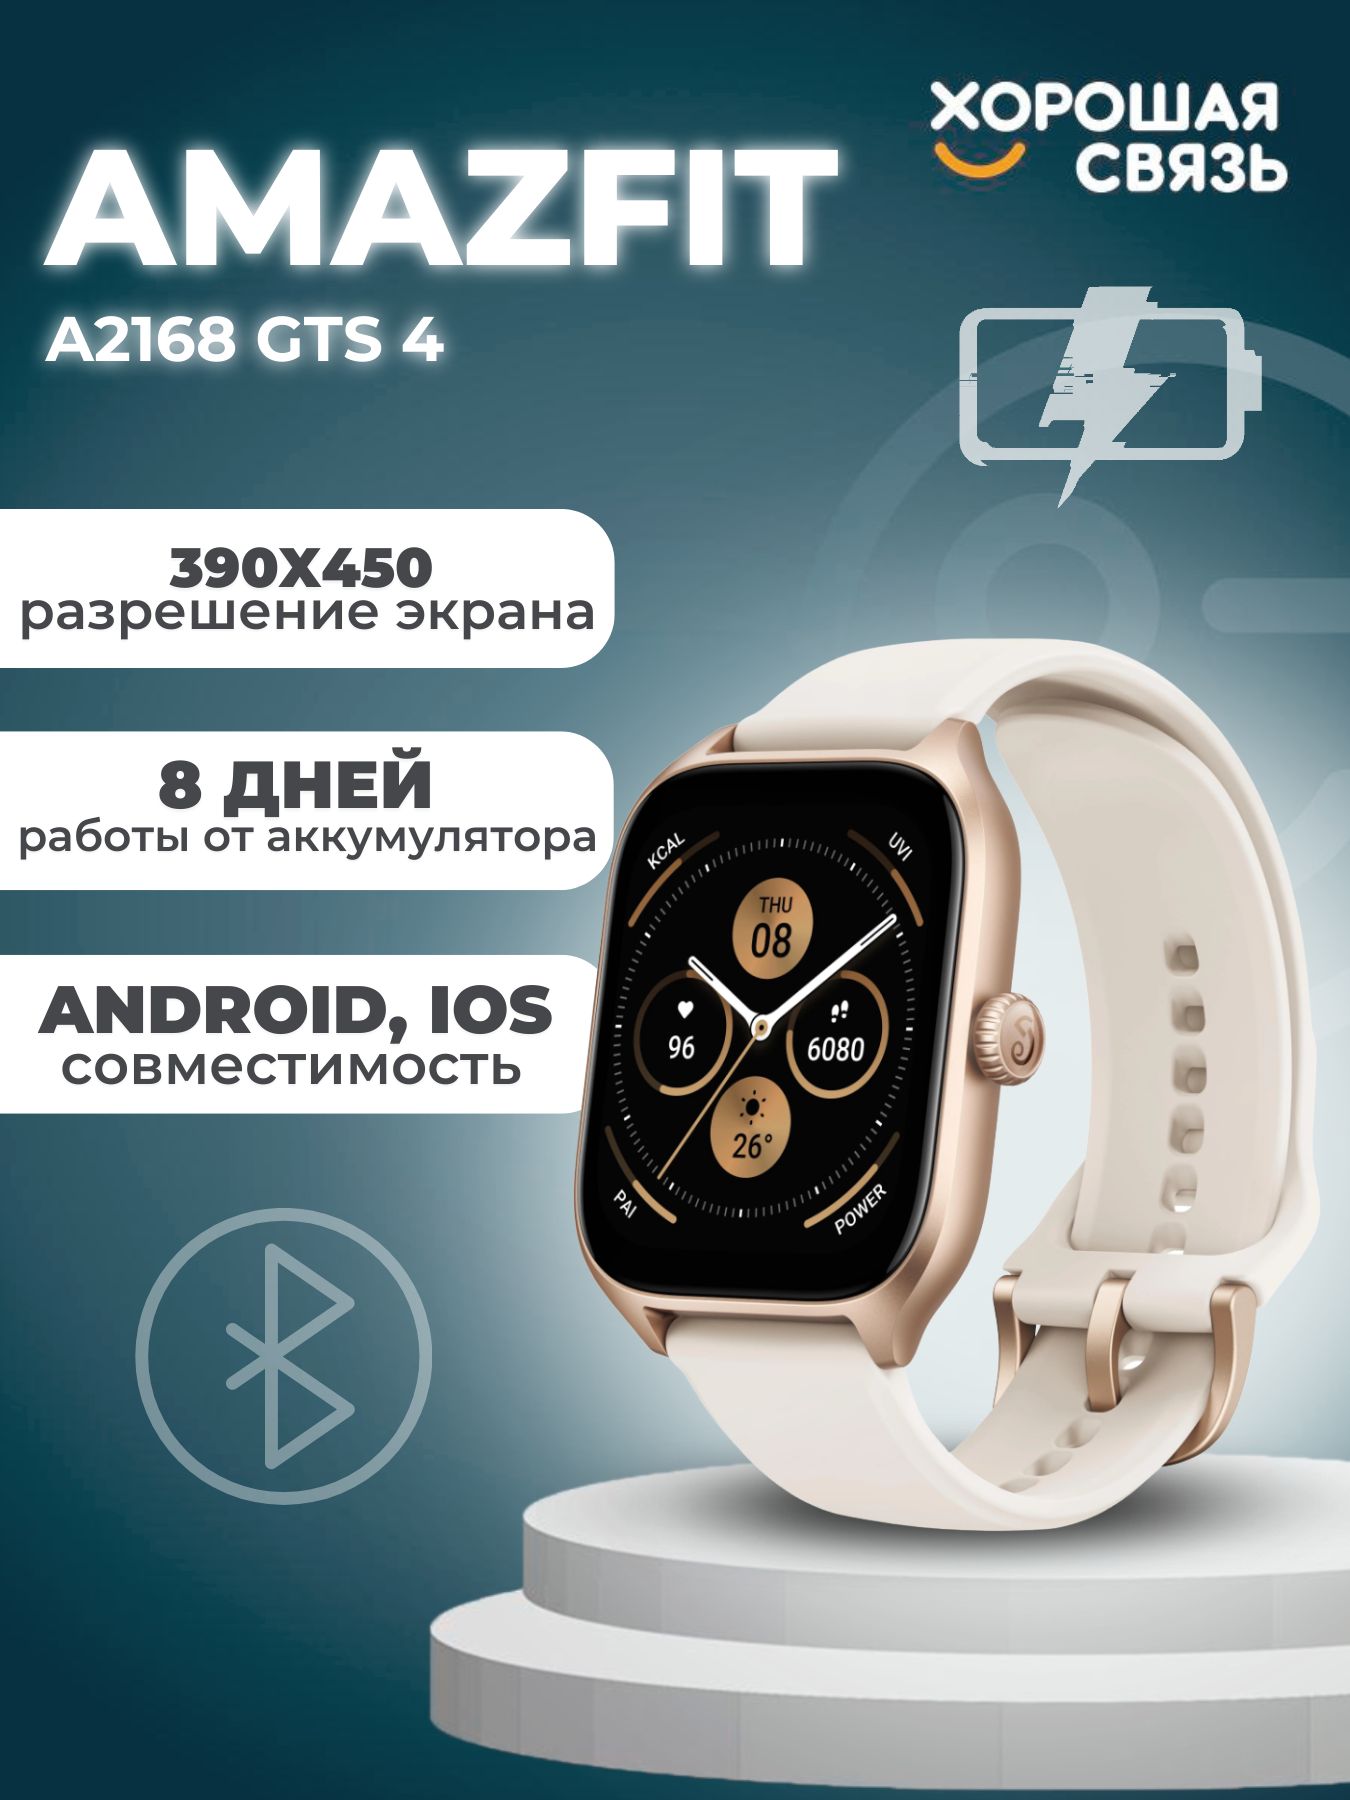 Часы amazfit a2168. Смарт-часы Amazfit GTS 4 Misty White. Умные часы Amazfit a2168 GTS 4 (белый).